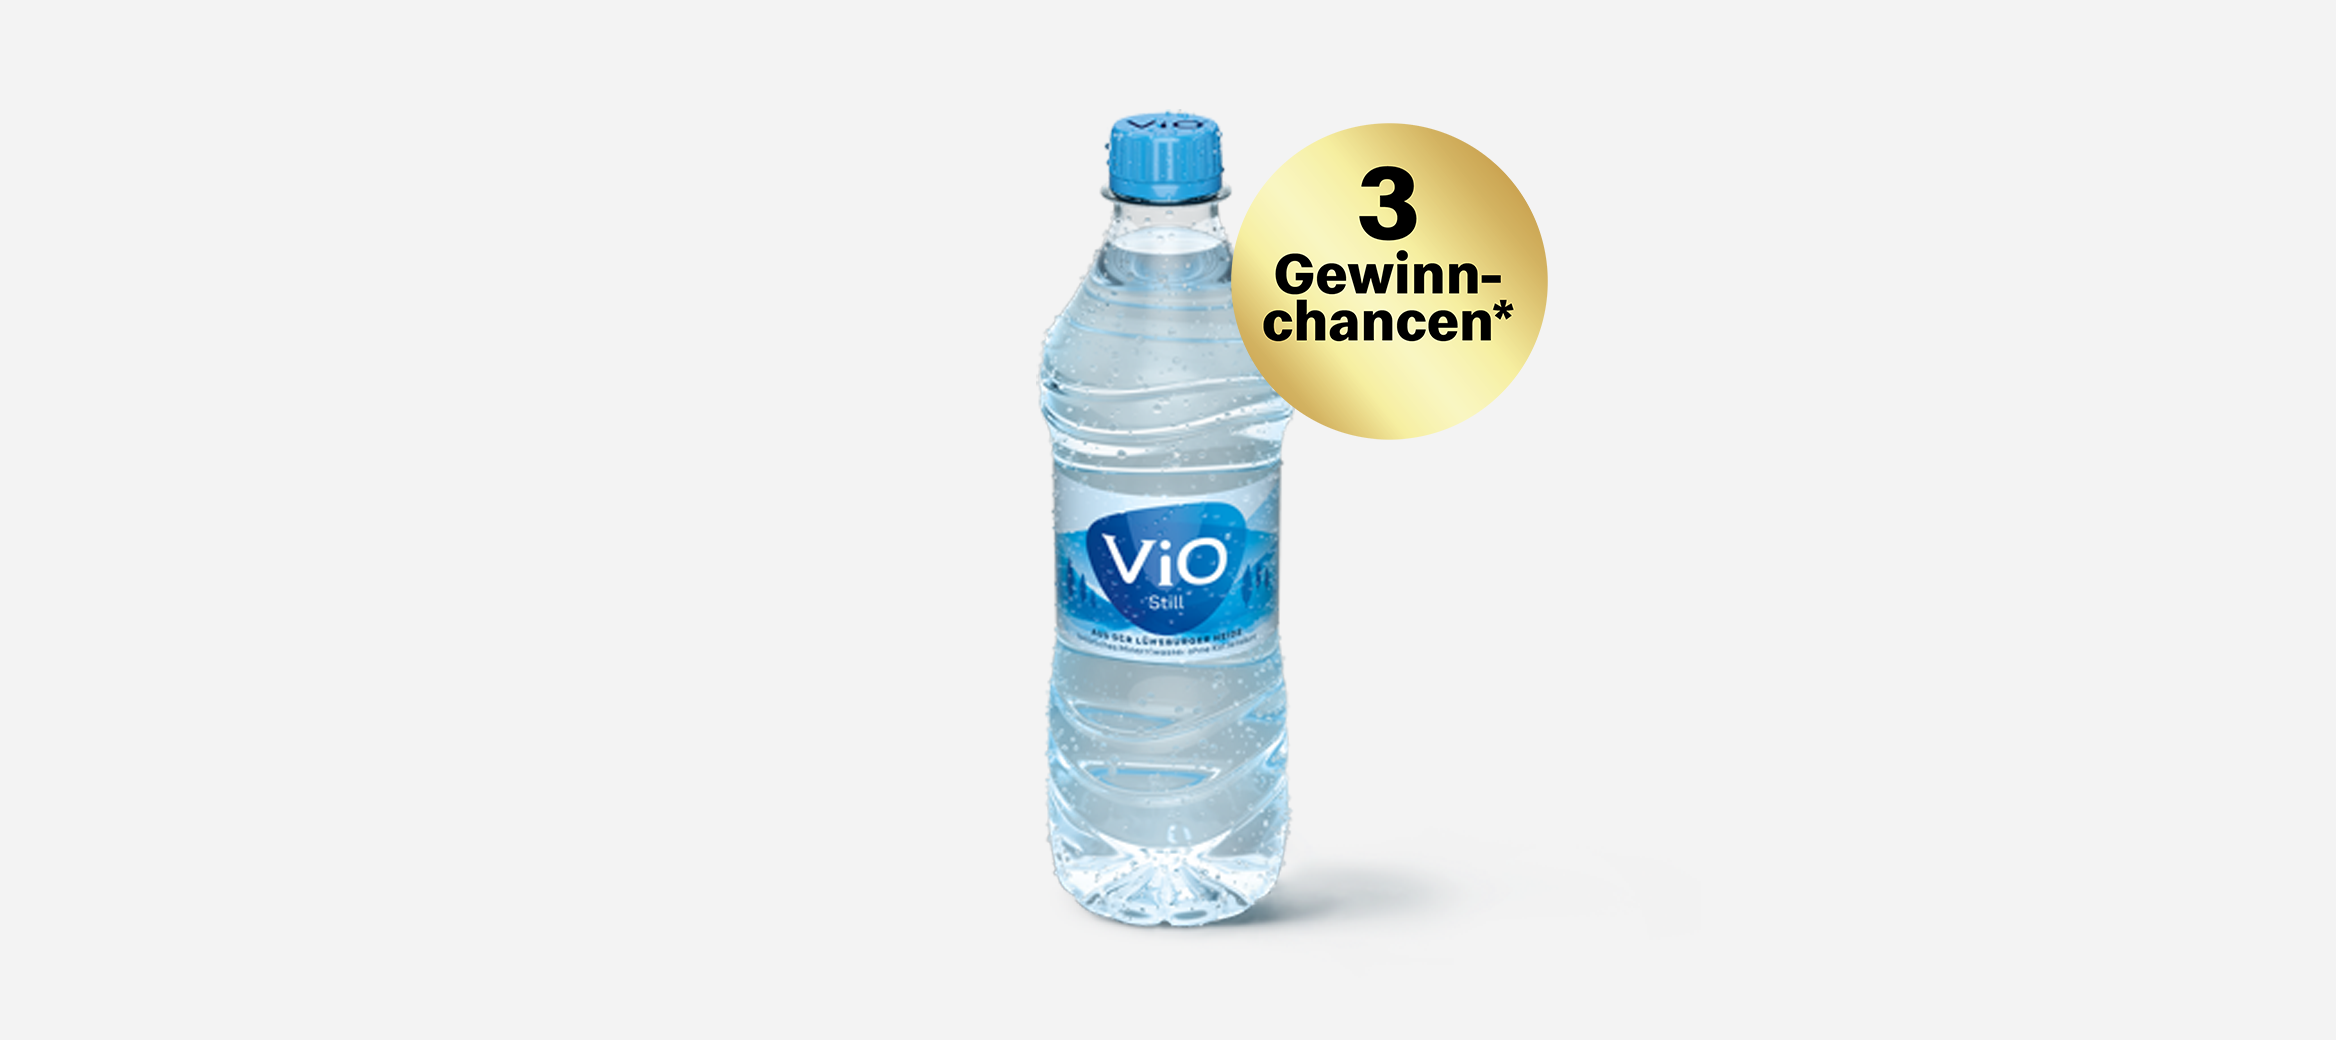 Abbildung: Wasserflasche